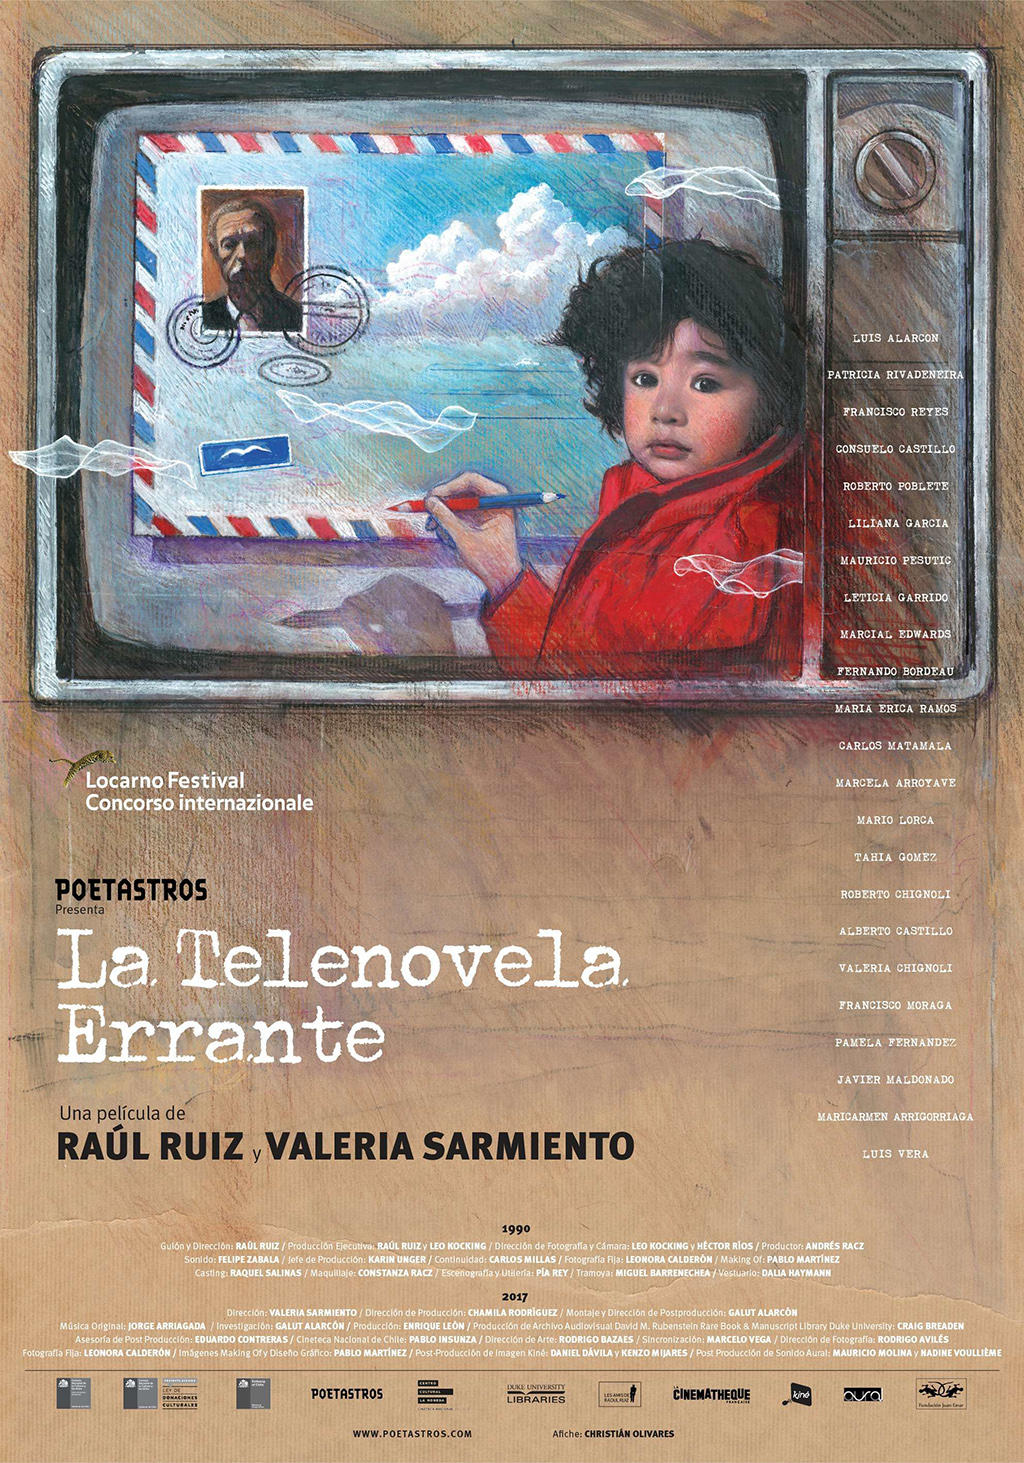 Poster for film, Telenovela Errante, by Raoul Ruiz